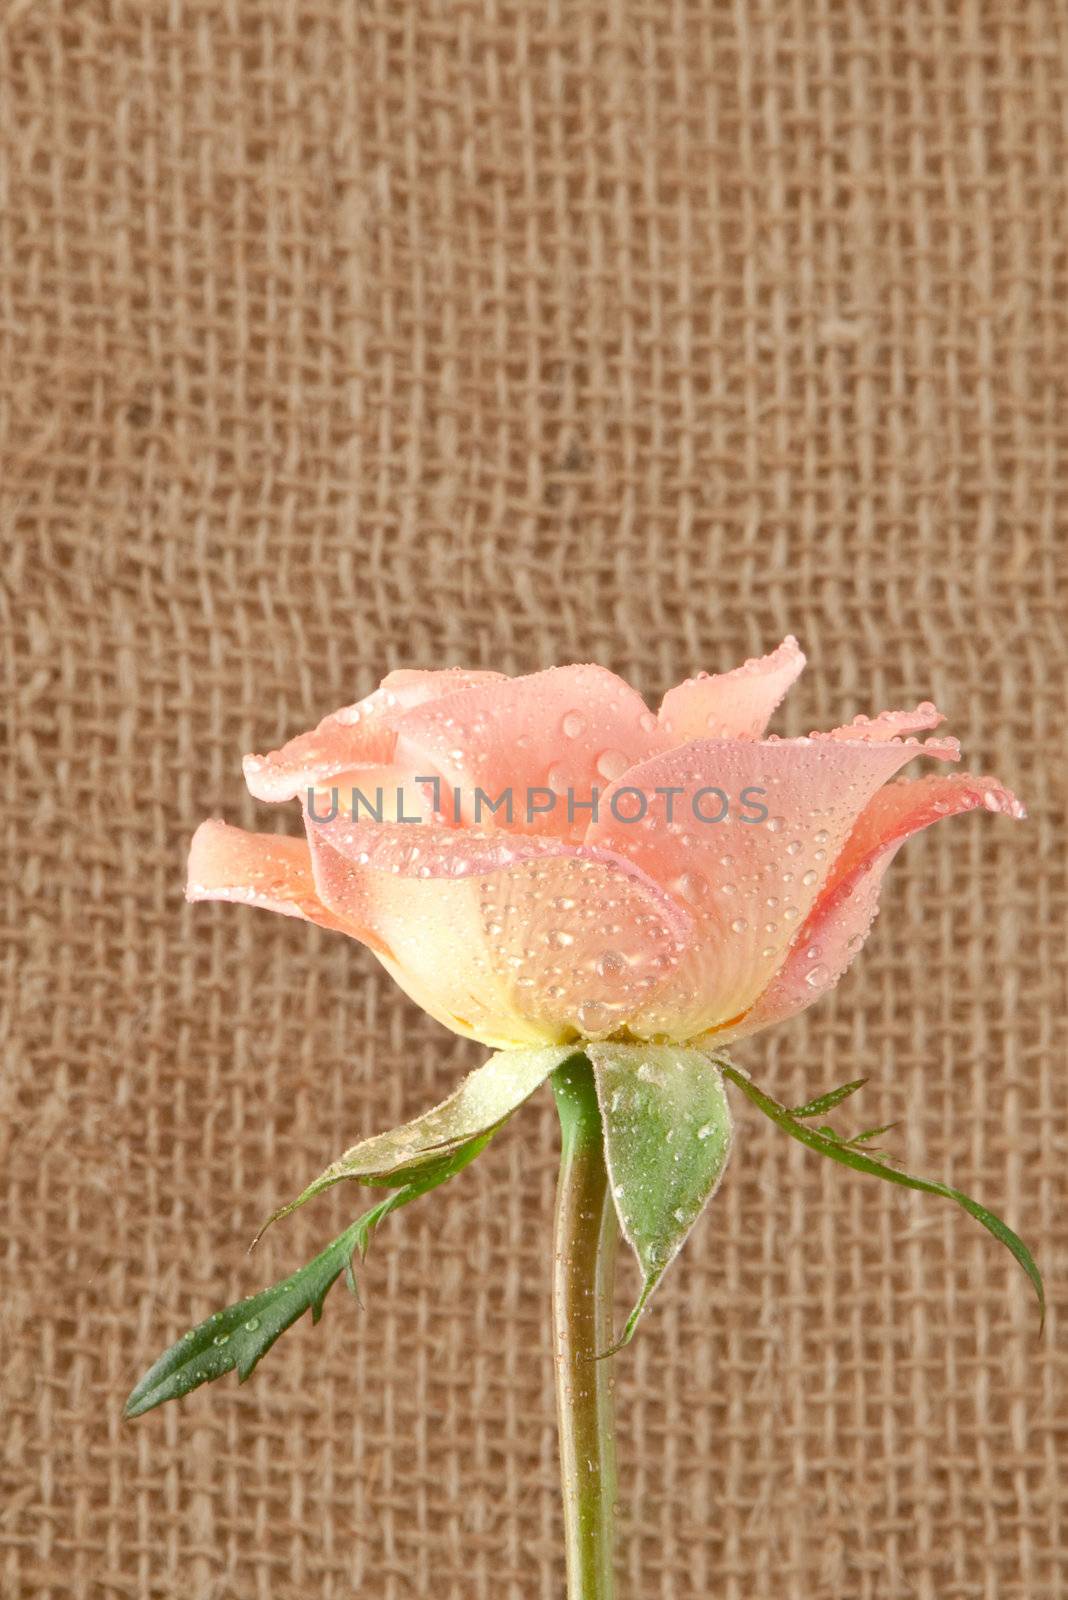 rose flower on hessian